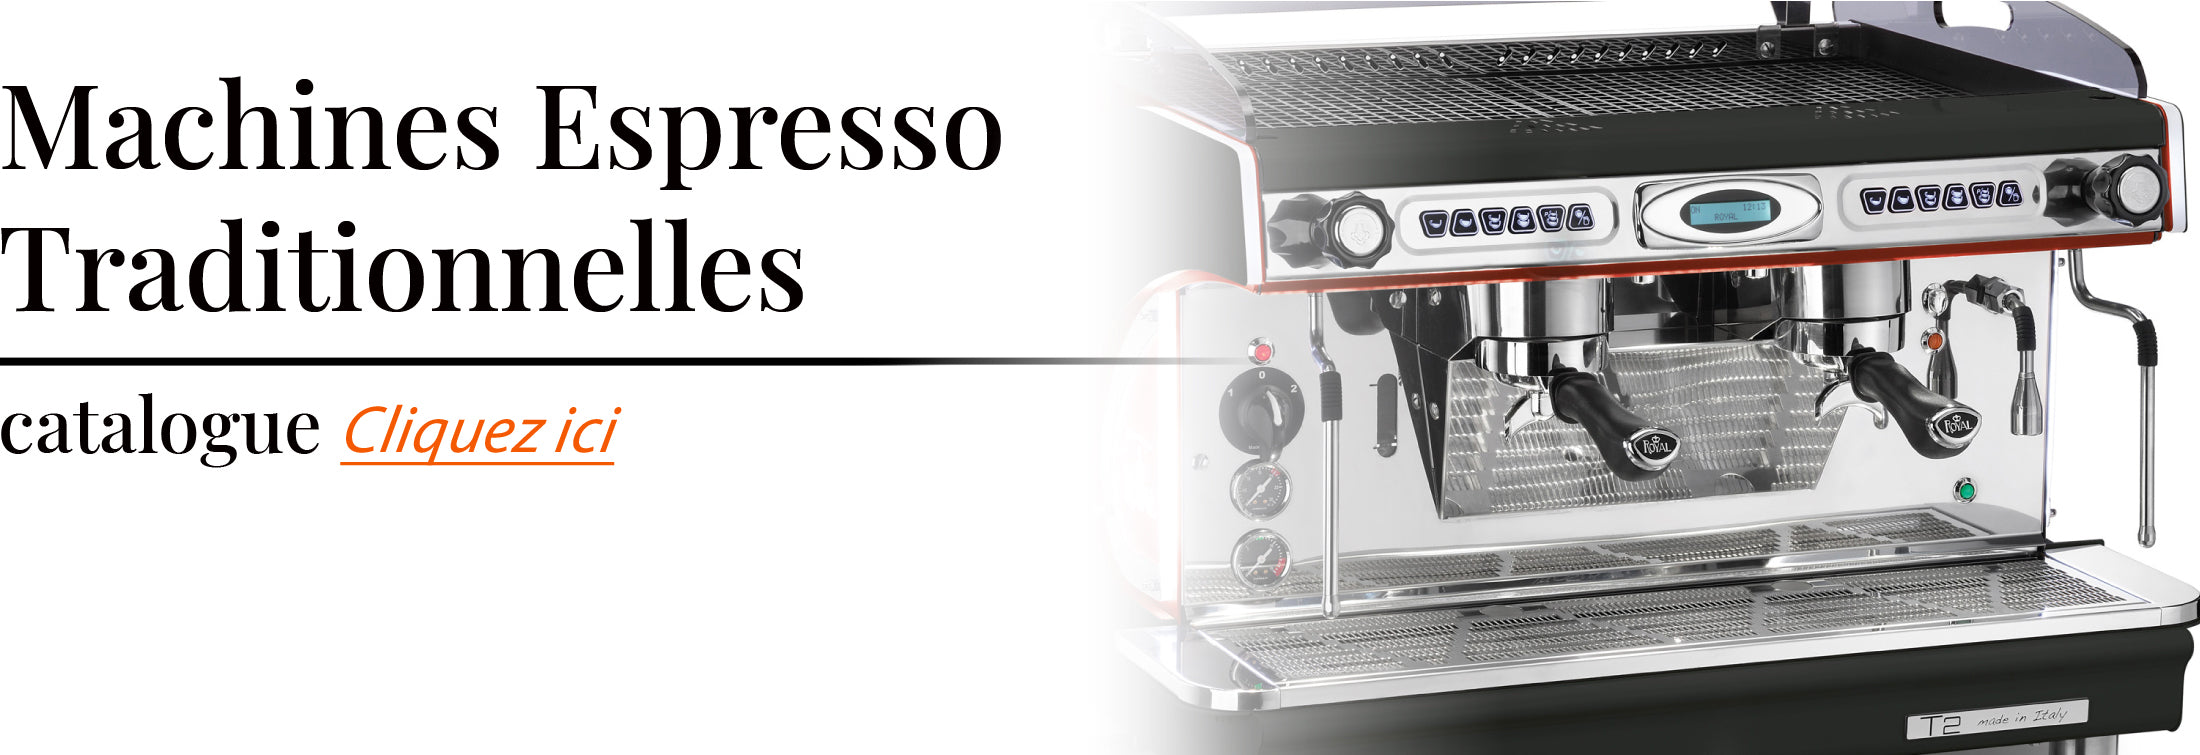 Machine espresso traditionnel